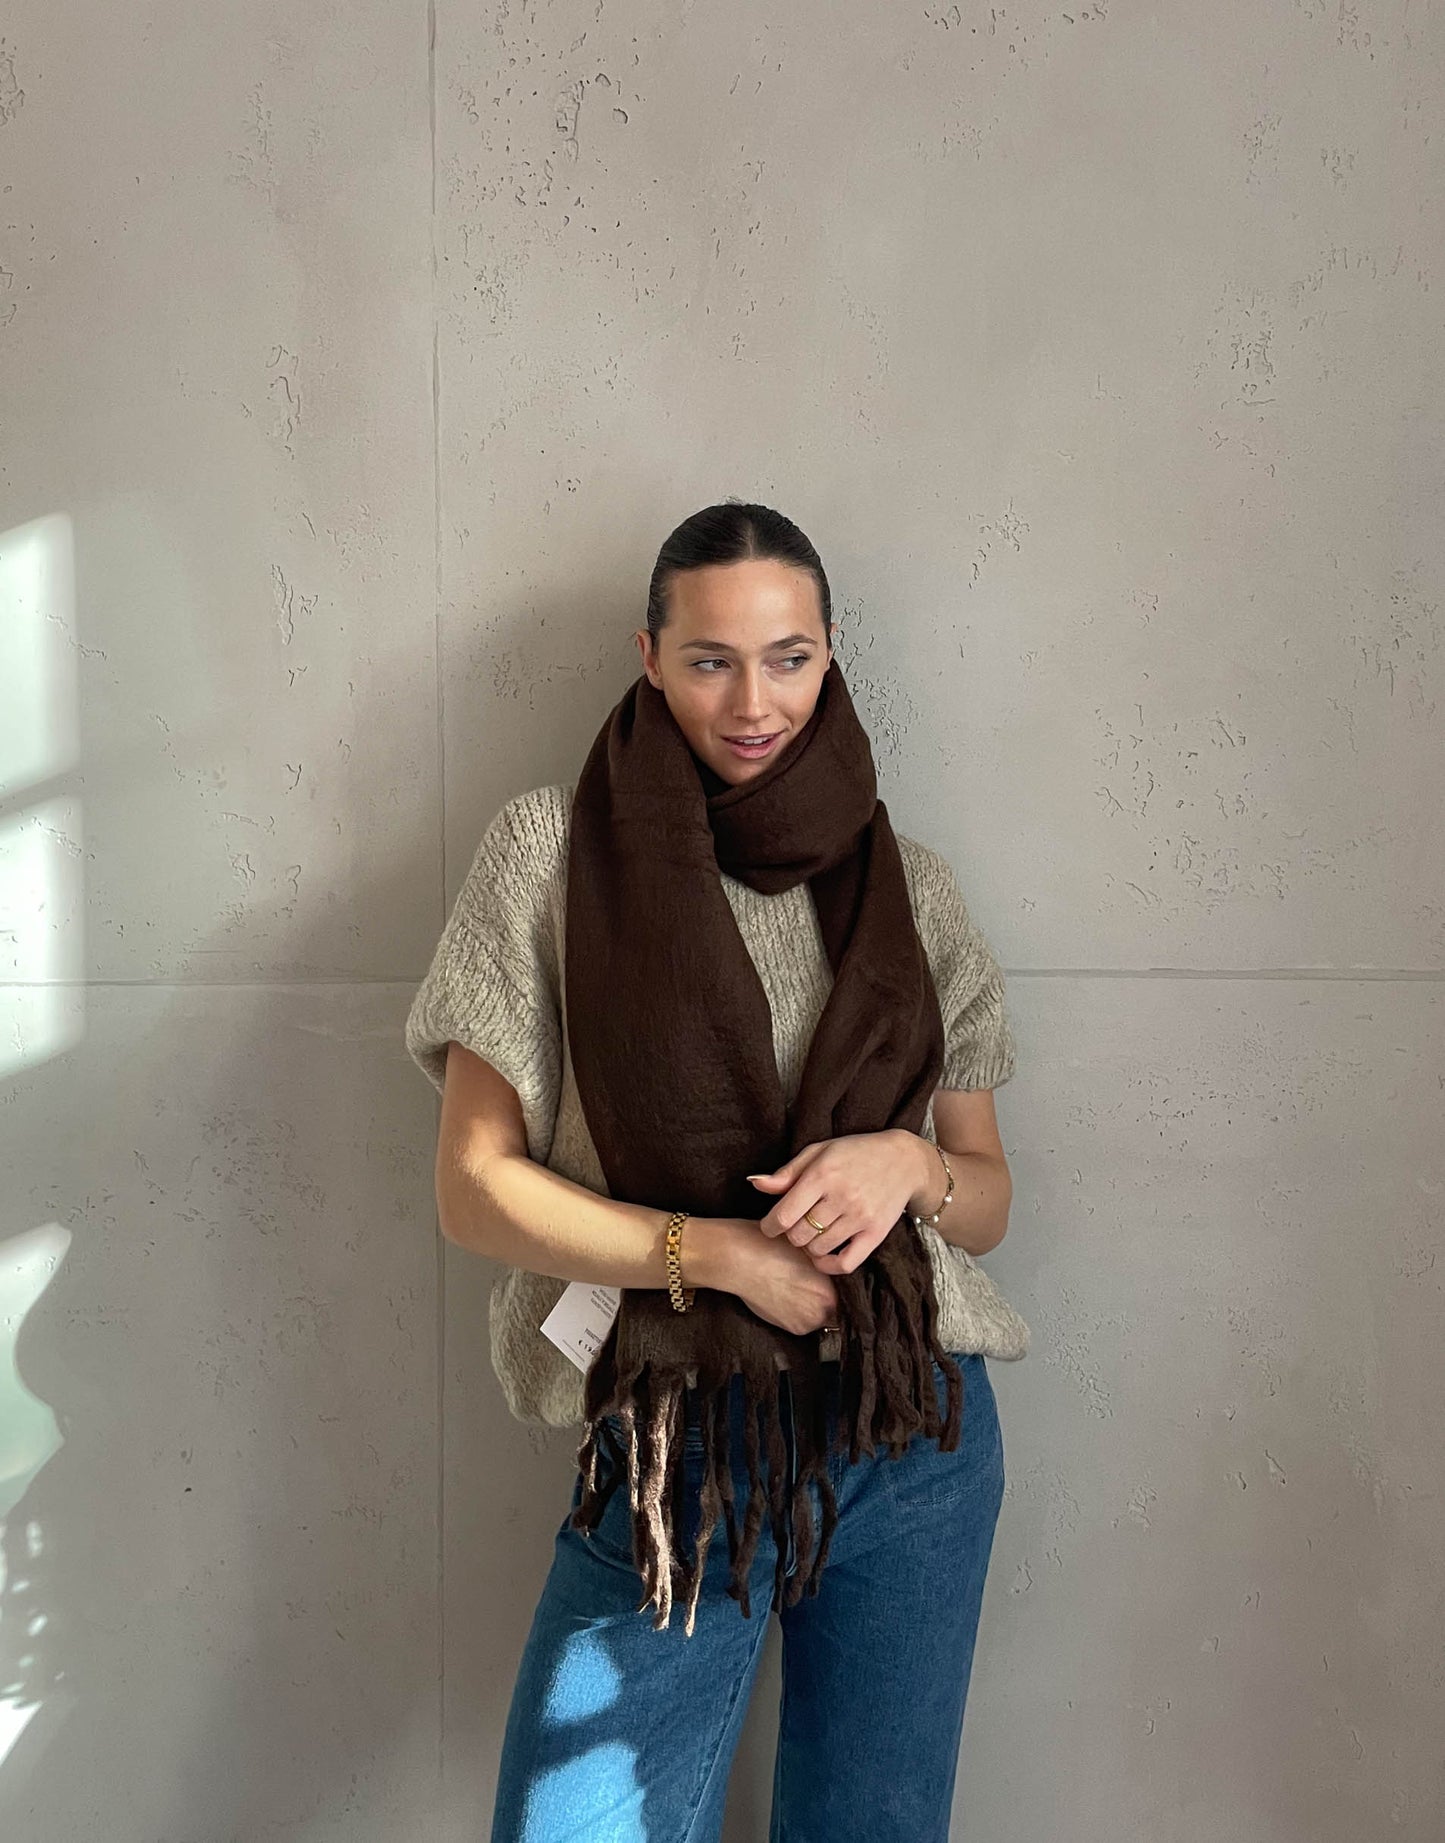 Frau mit brauen Haaren trägt Schal in dunkelbraun